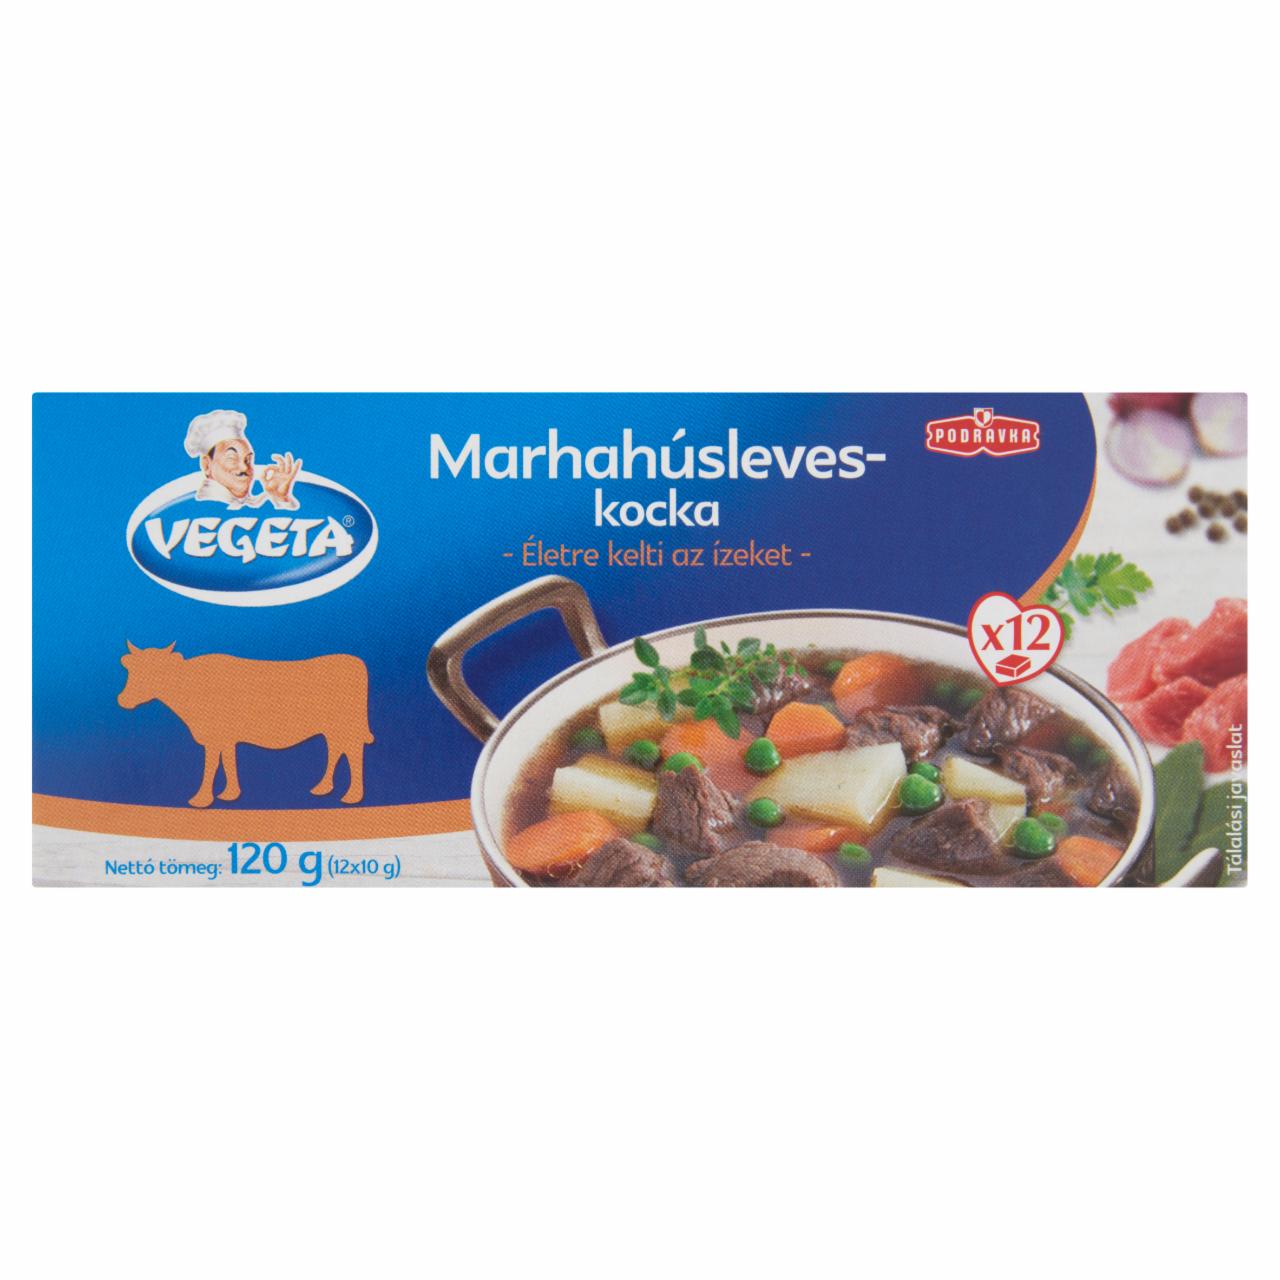 Képek - Vegeta marhahúsleves-kocka 120 g